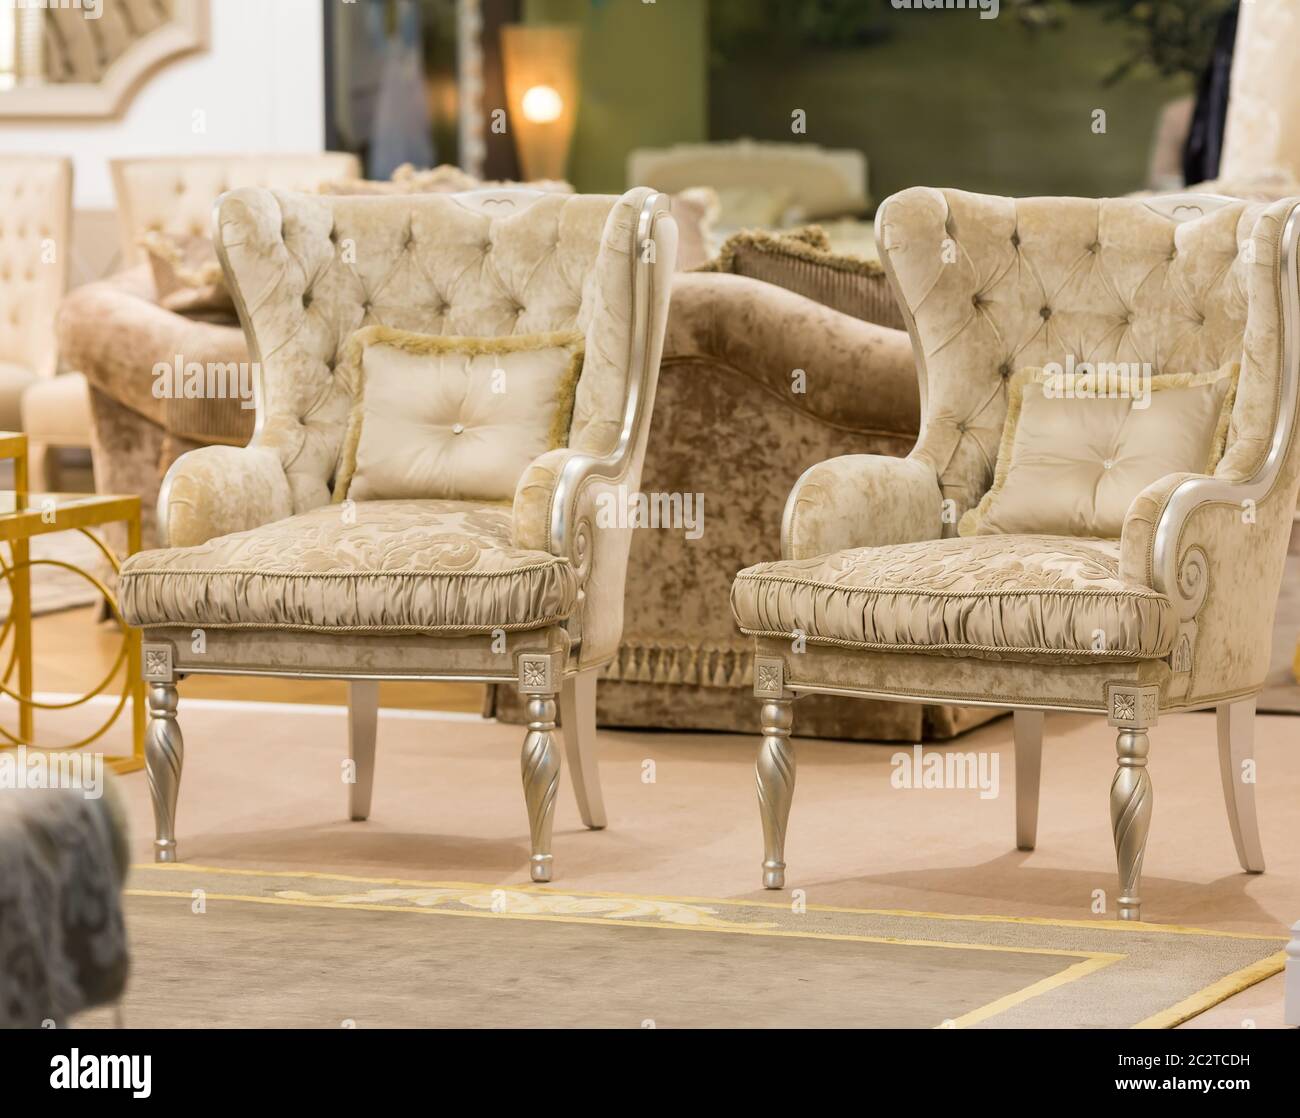 Salon moderne avec deux fauteuils de luxe Photo Stock - Alamy